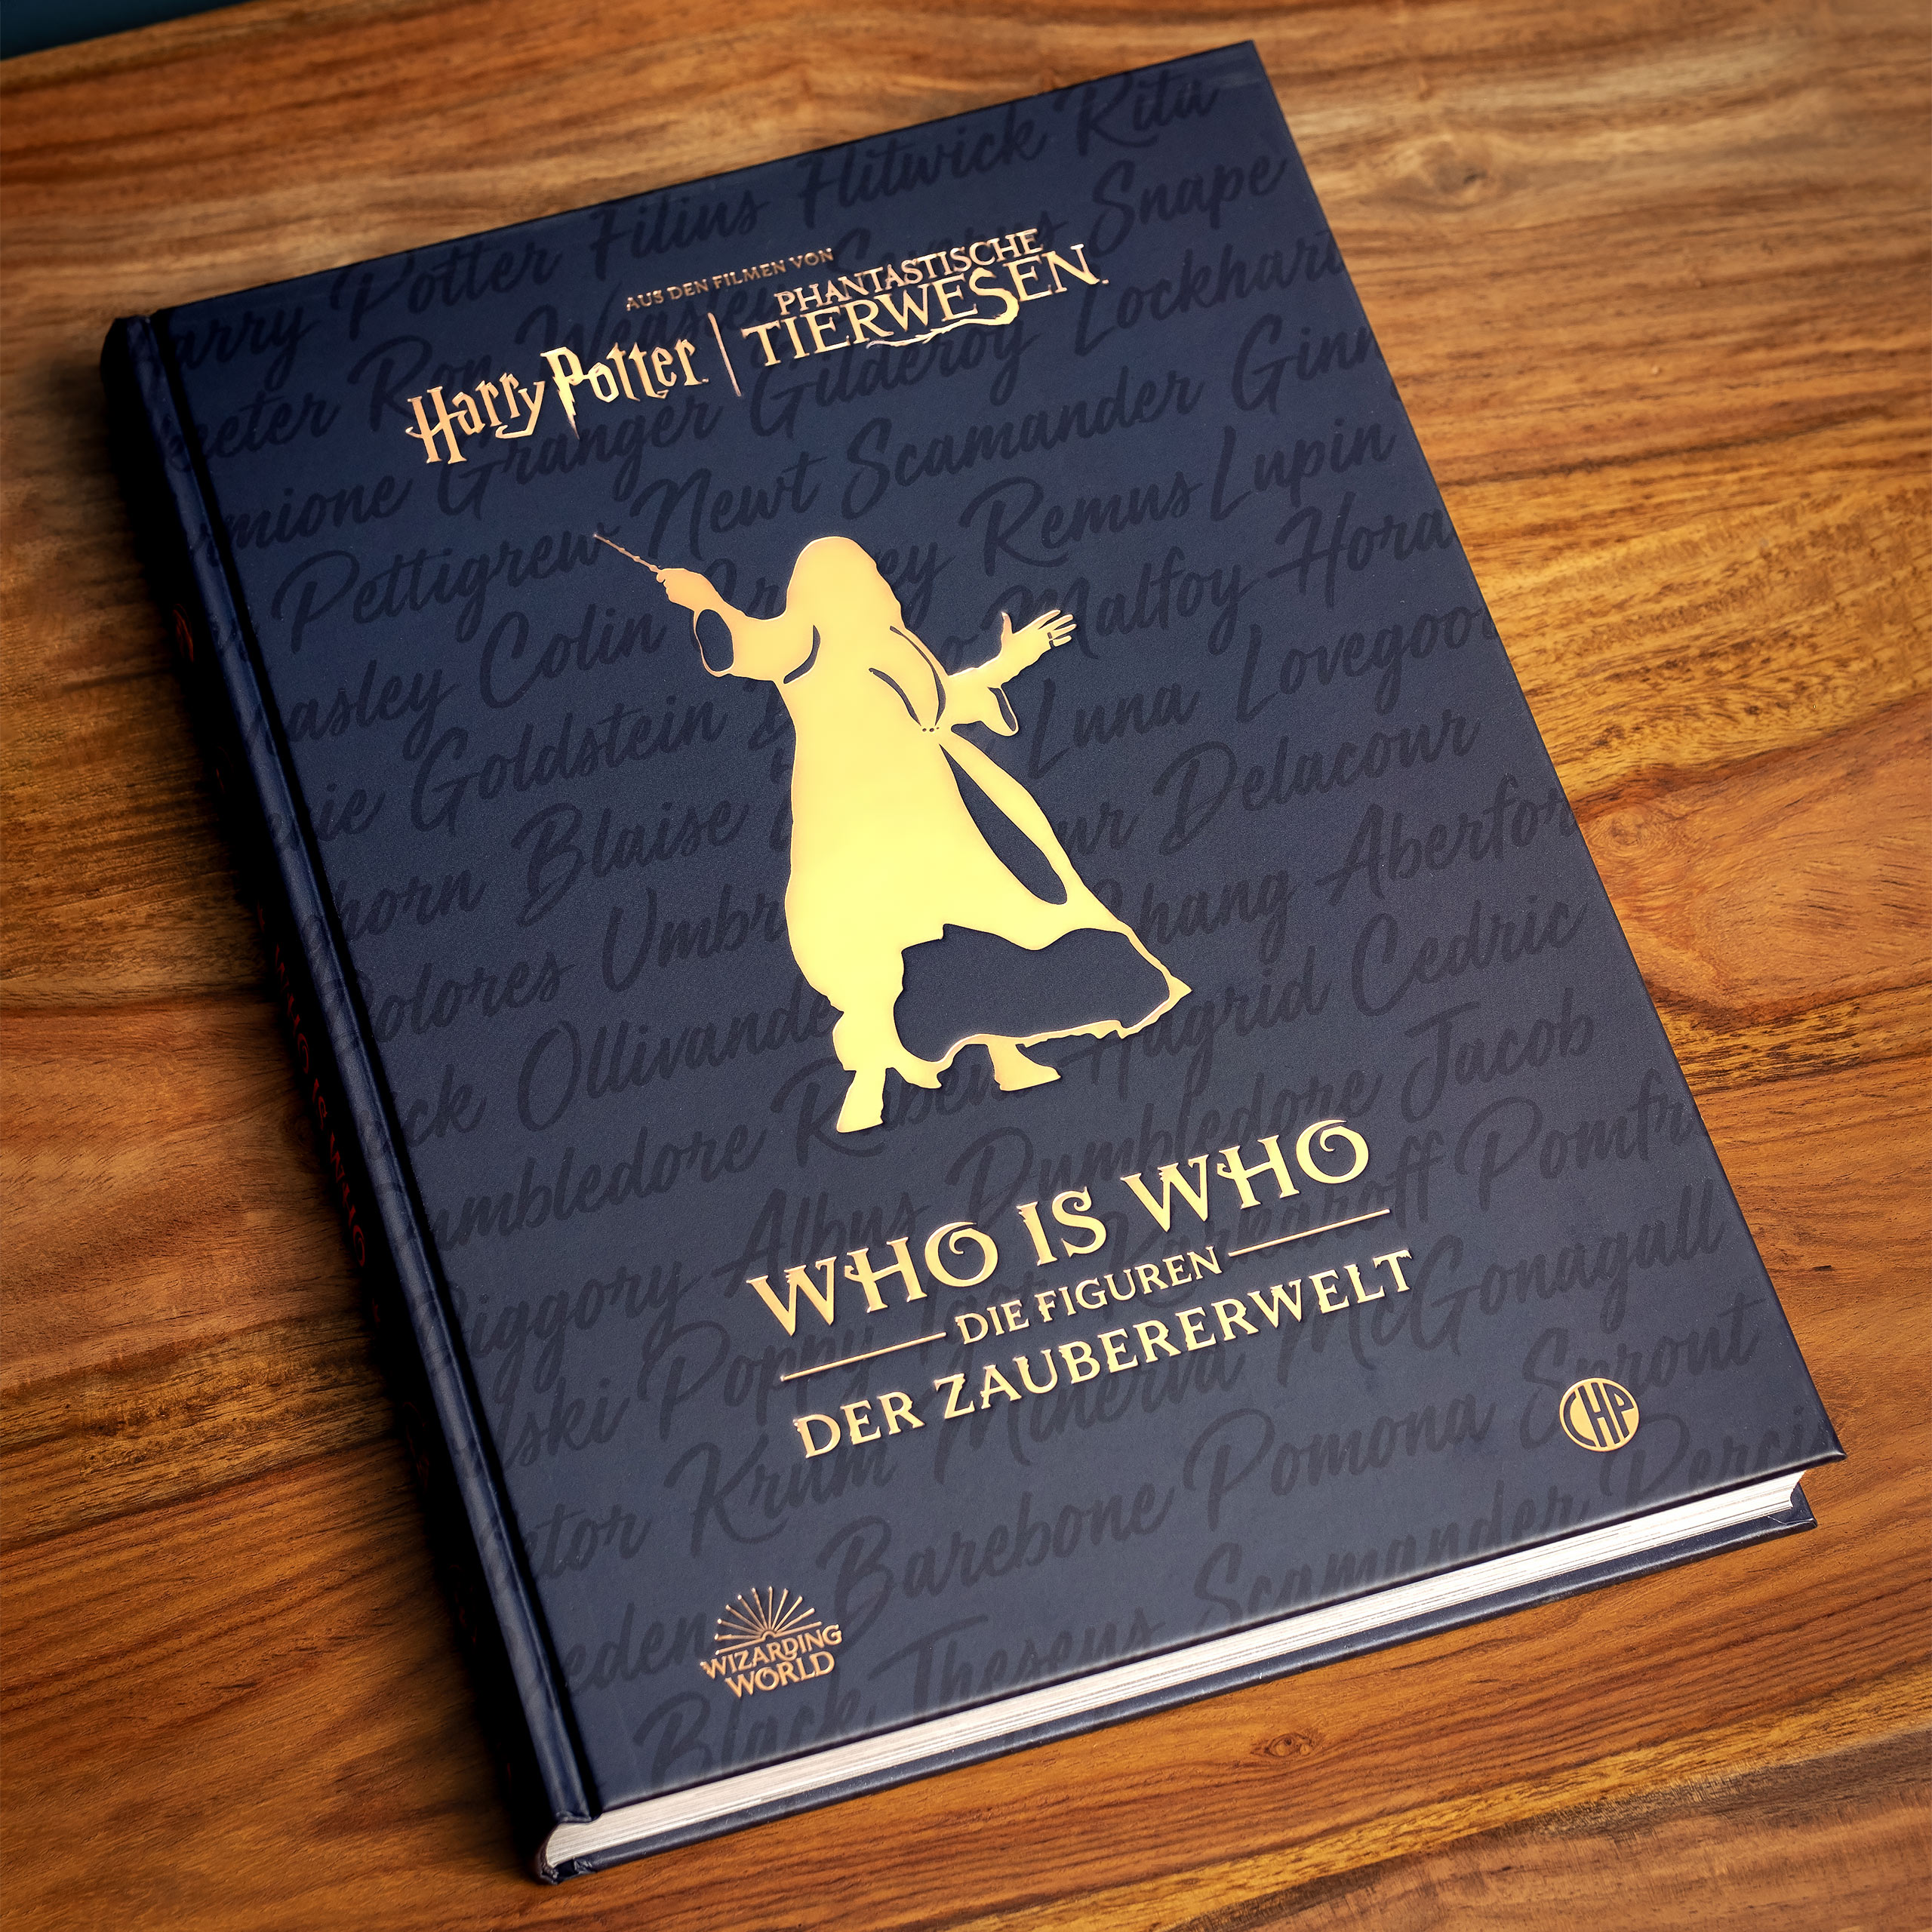 Harry Potter - Who Is Who - Die Figuren der Zauberwelt Handbuch